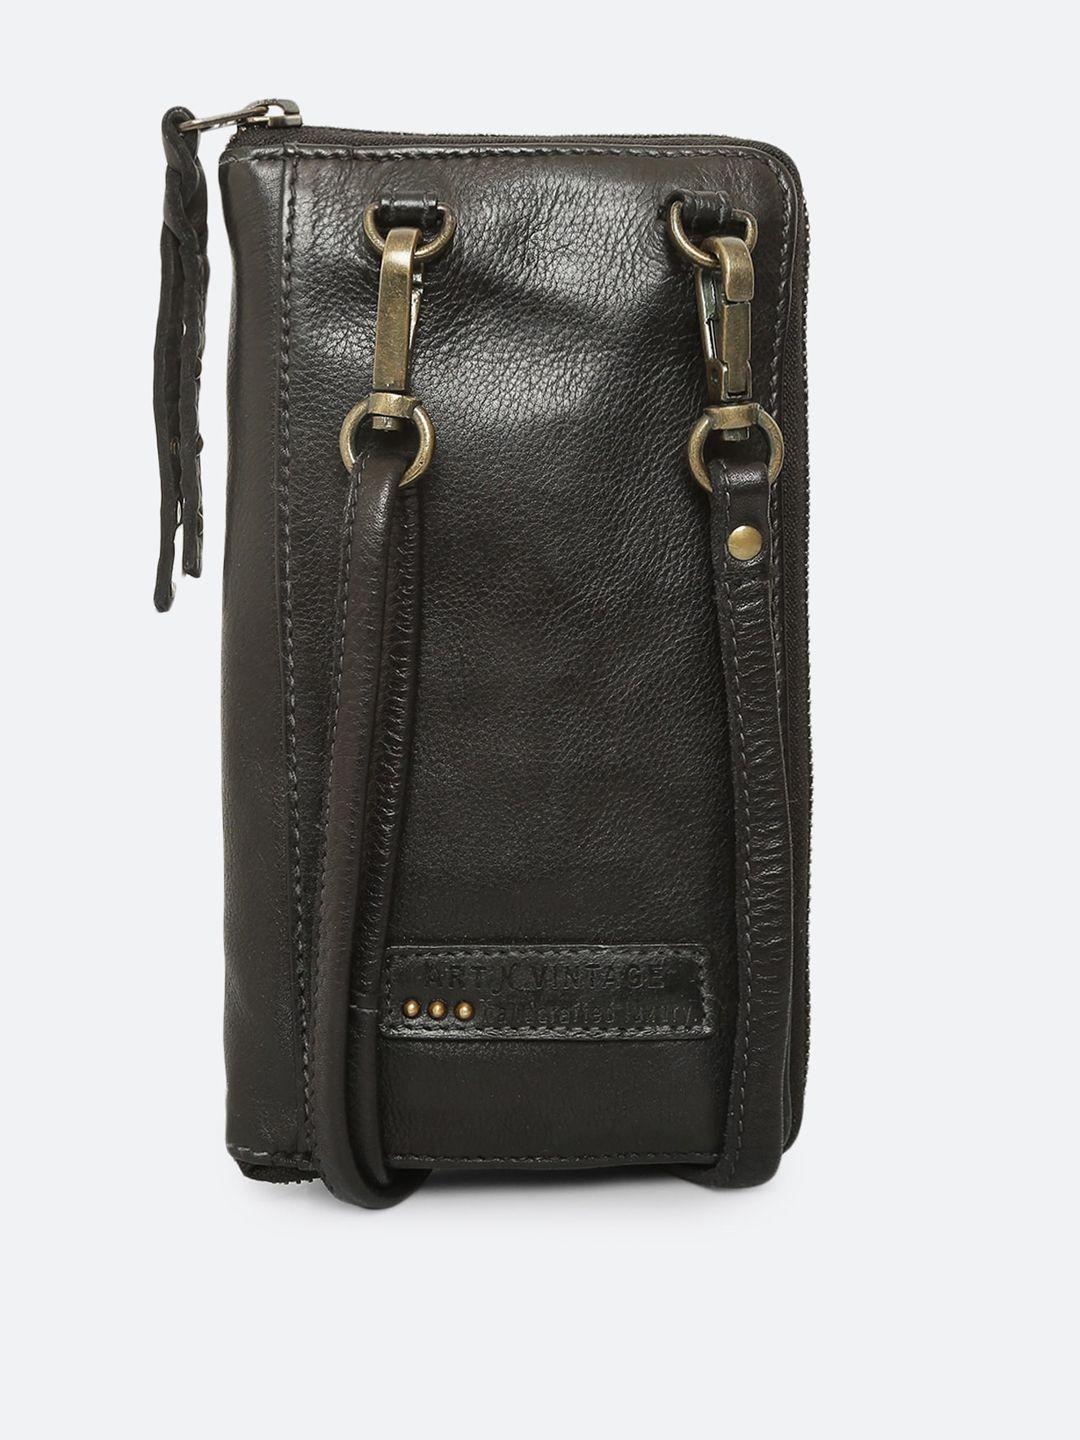 art n vintage black leather oversized structured handheld bag with tasselled